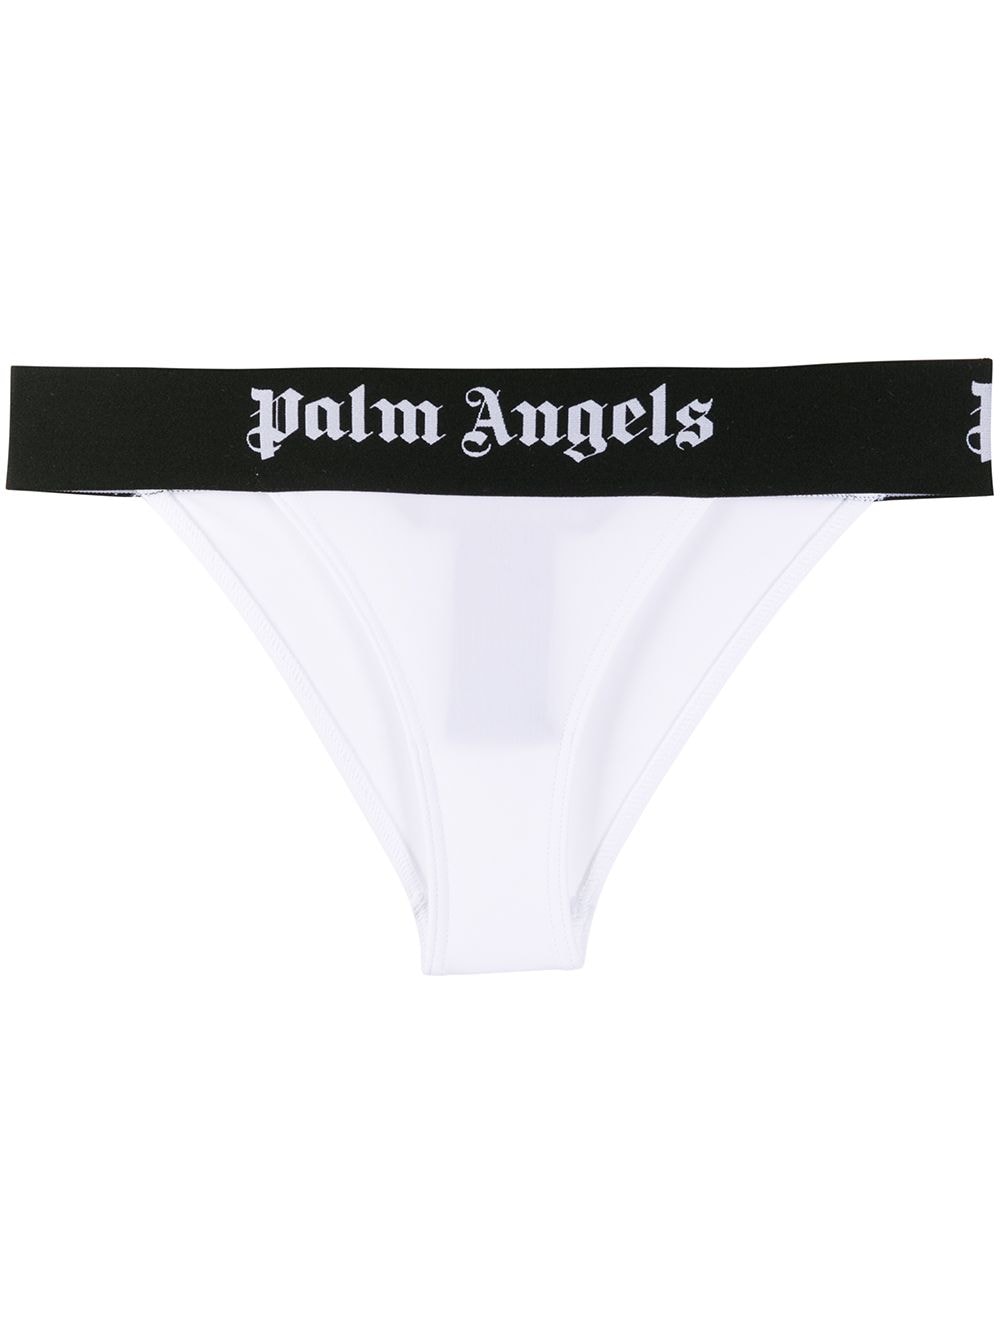 фото Palm angels плавки бикини с логотипом